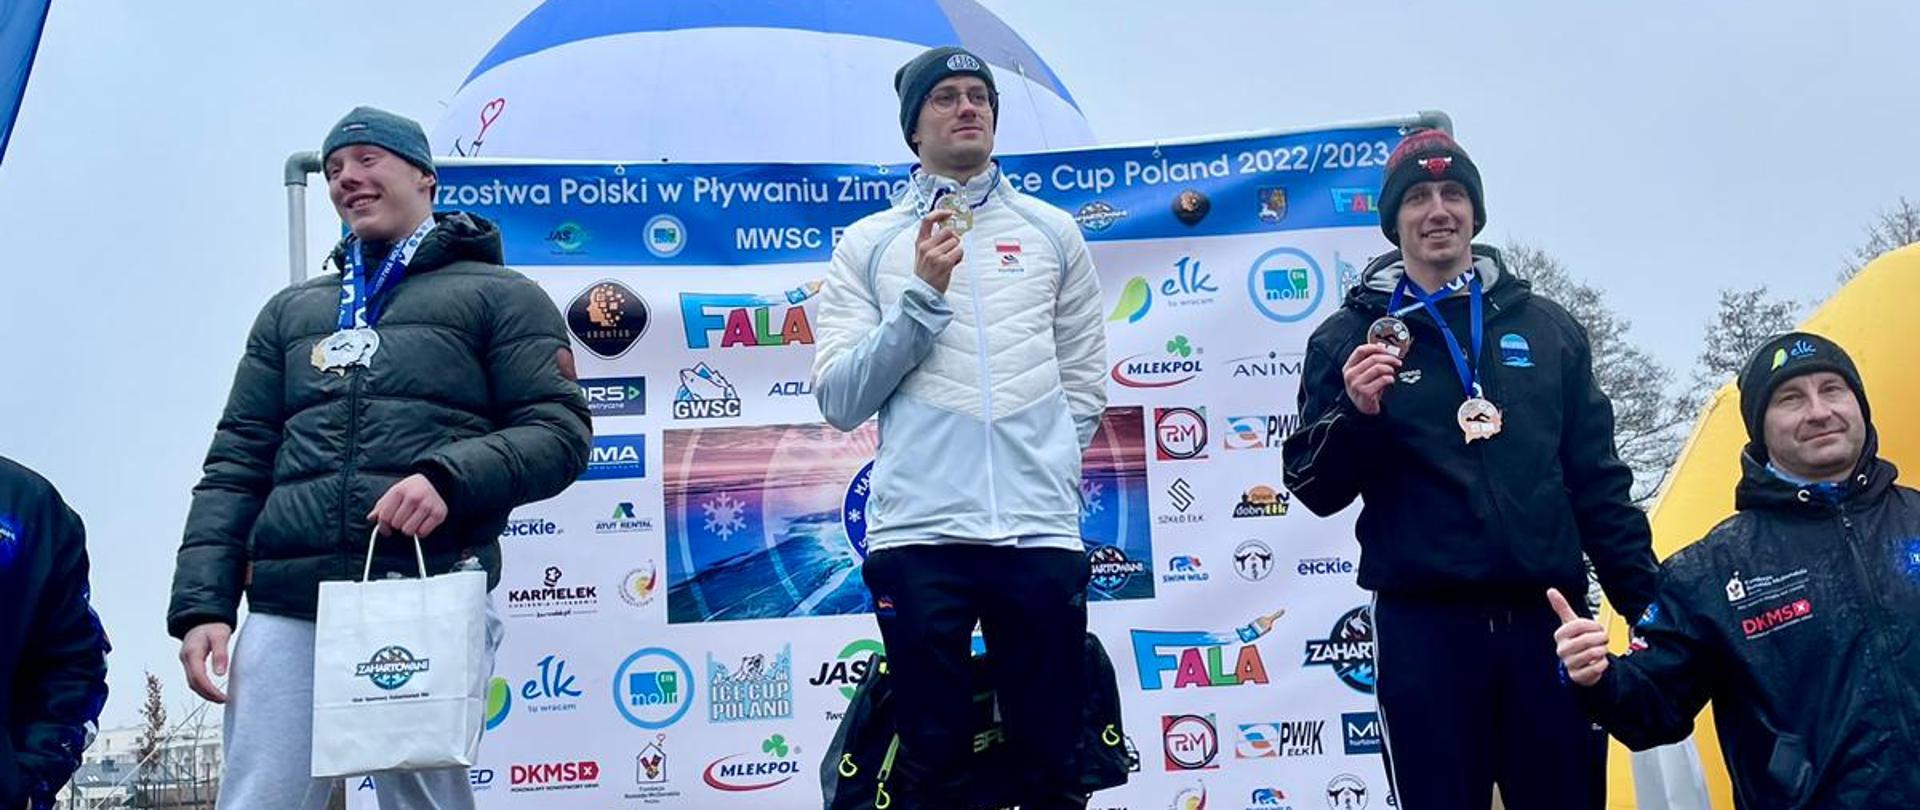 Strażak z Włocławka z dwoma brązowymi medalami Mistrzostw Polski w pływaniu zimowym